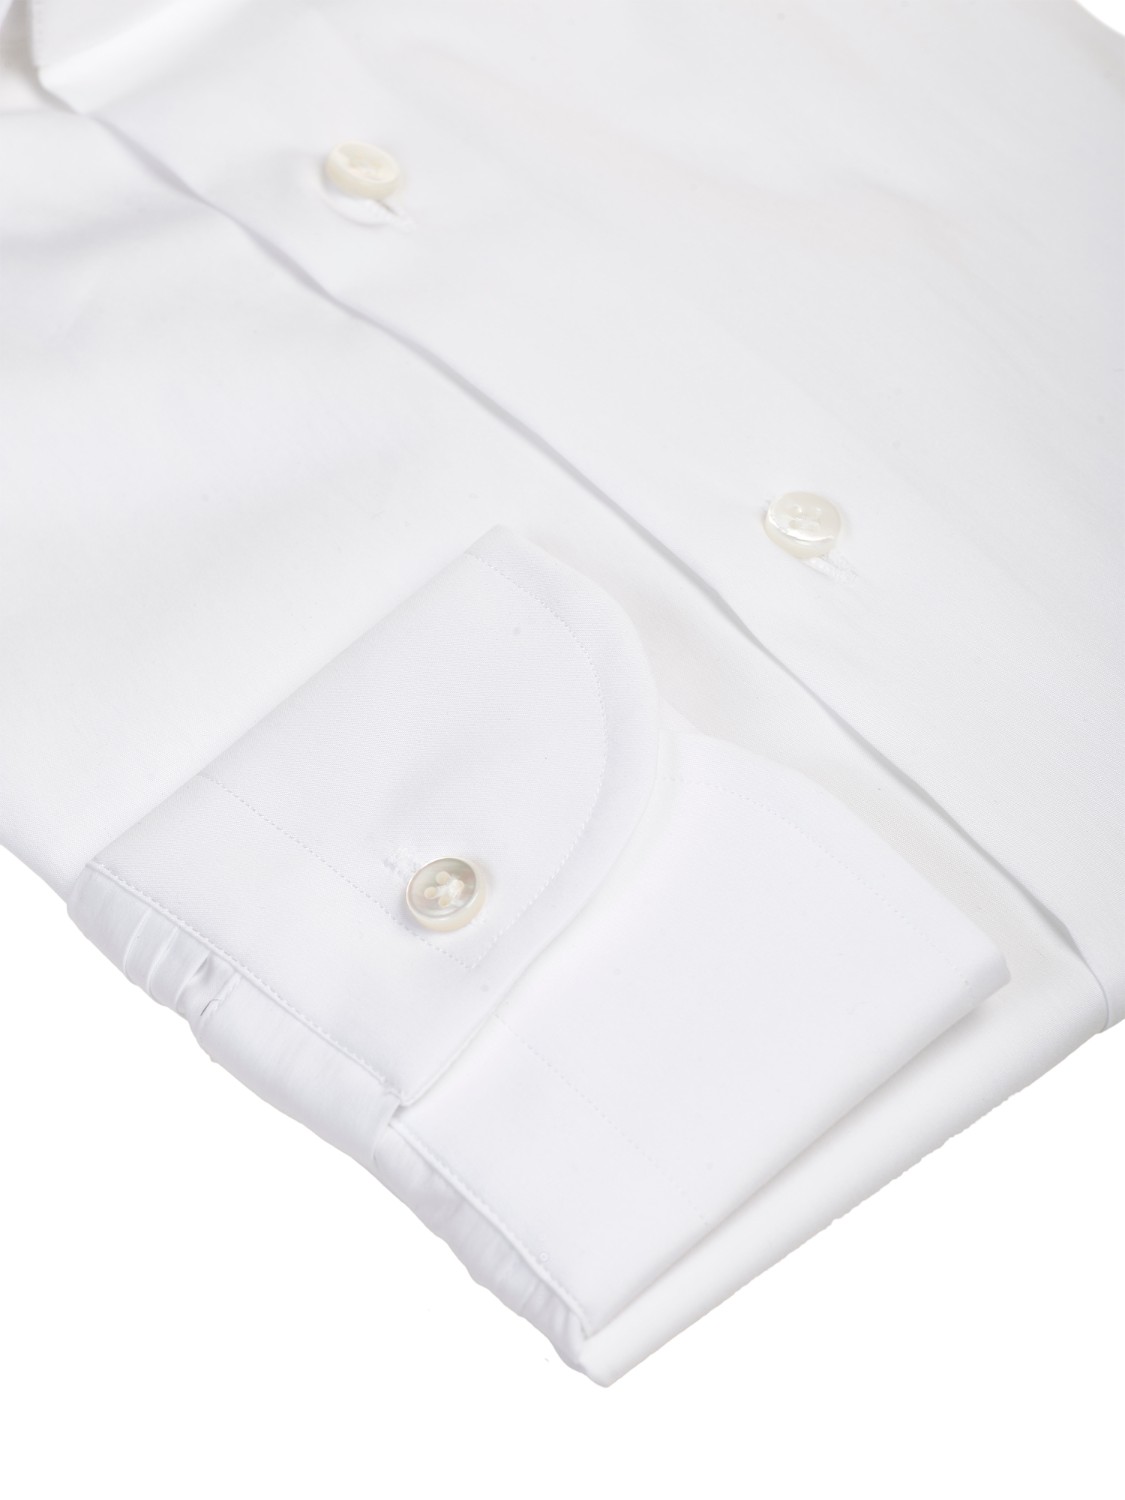 shop BAGUTTA  Camicia: Bagutta camicia in cotone, bianca.
Colletto alla francese. 
Slim fit. 
Composizione: 73% cotone 24% poliammide 3% elastan. 
Made in Italy.. 380 EBL CN9672-001 number 5167545